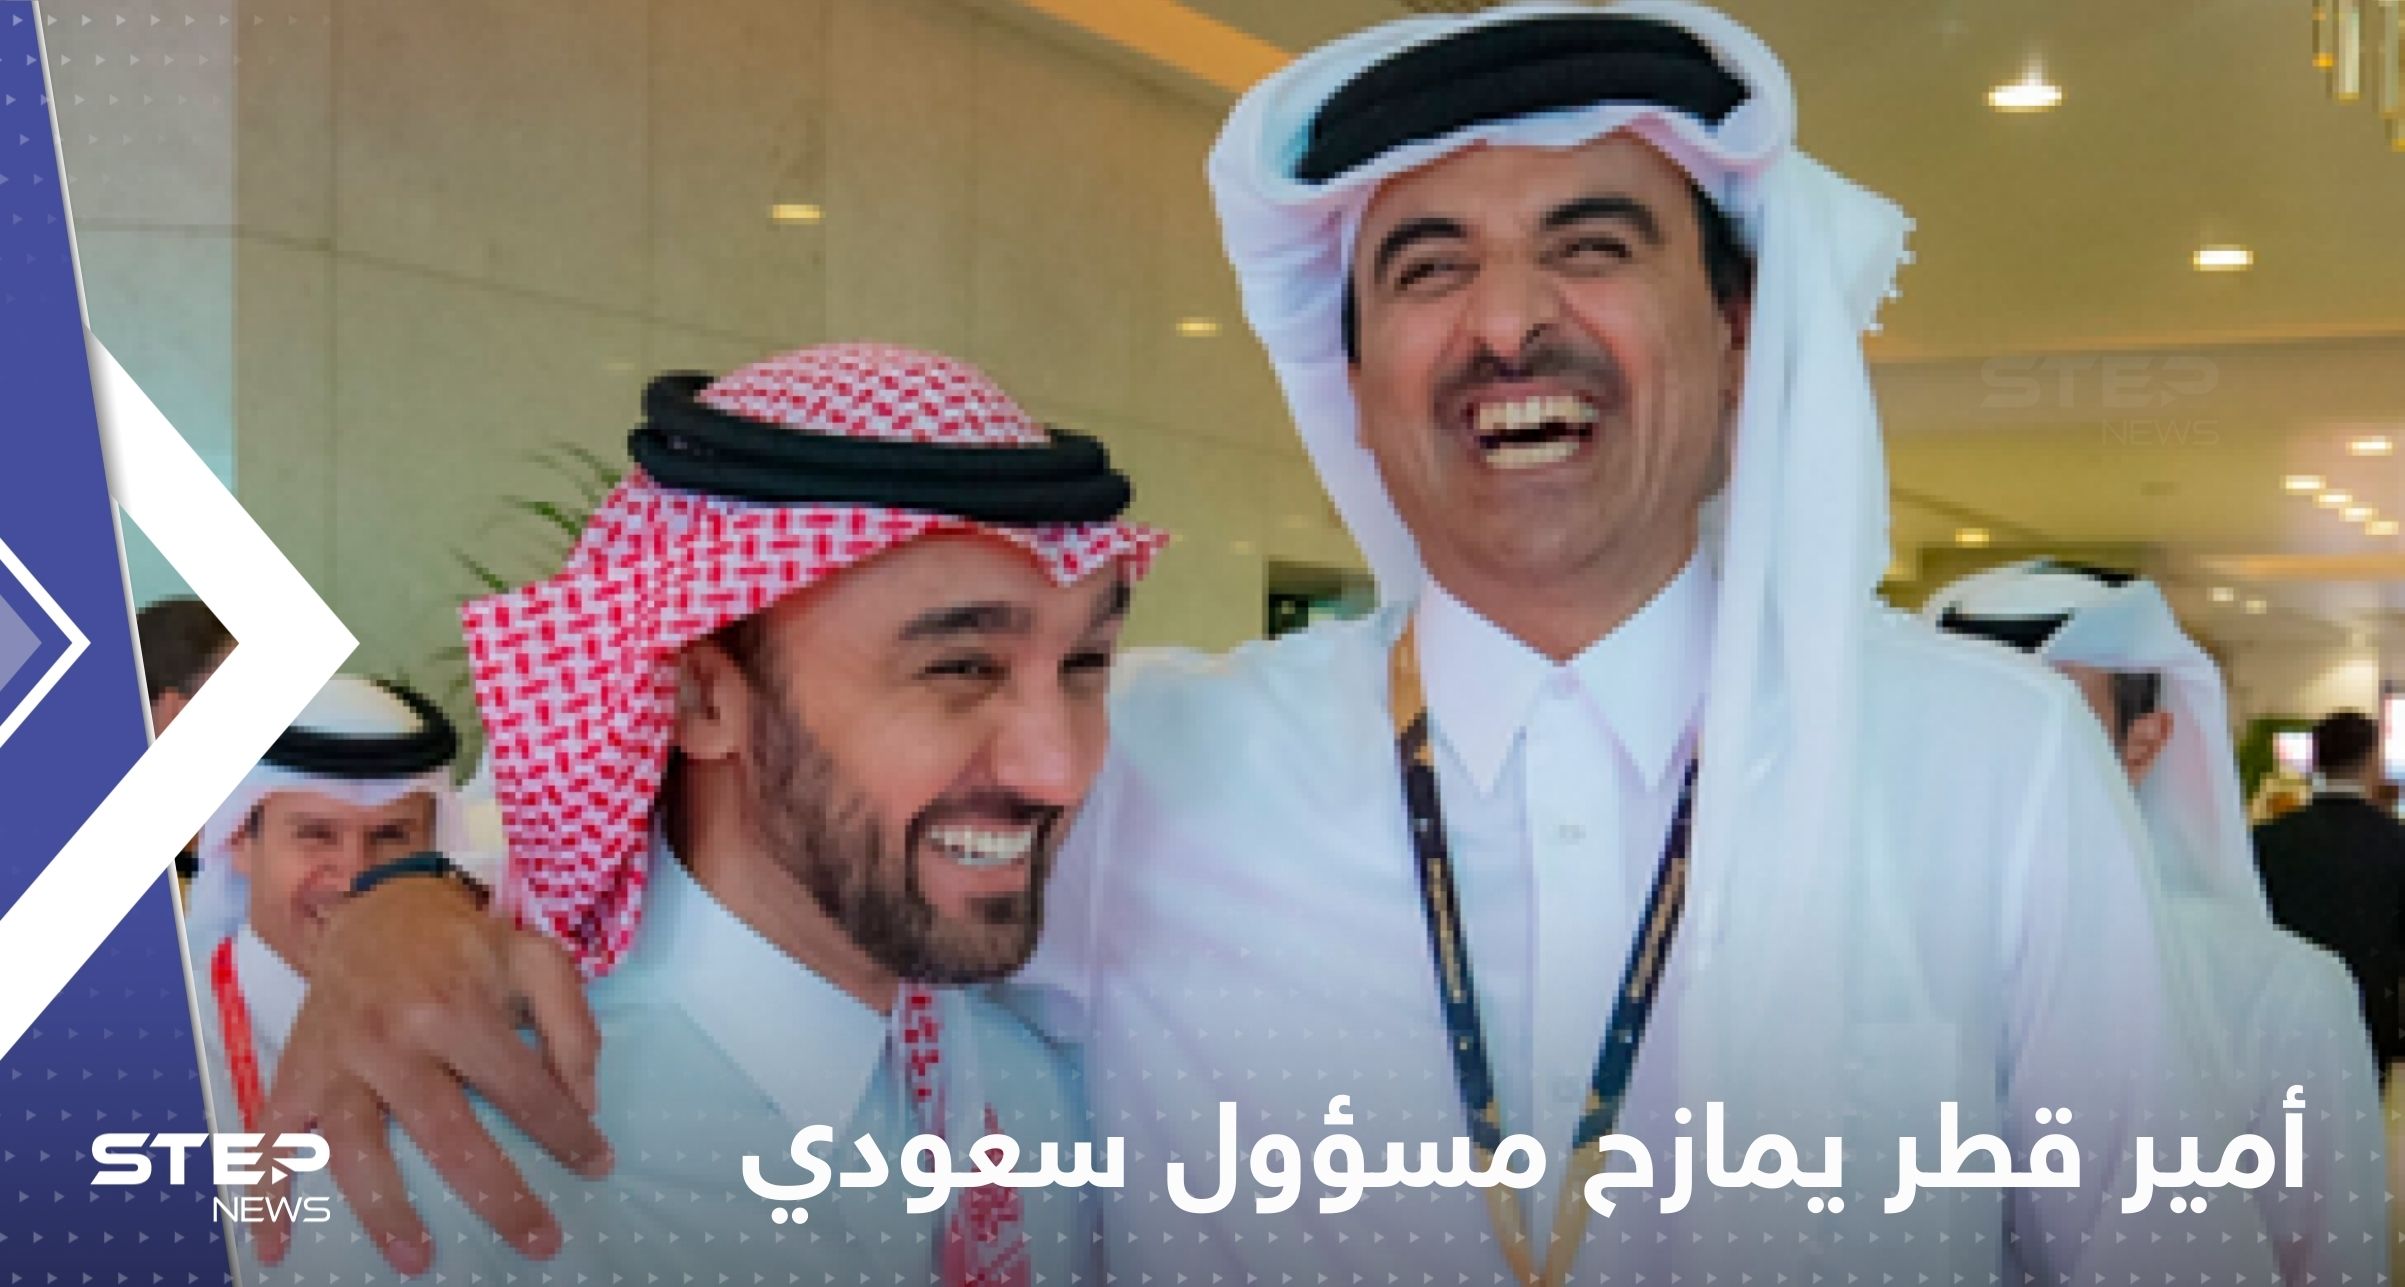 أمير قطر يمازح مسؤول سعودي قبل مواجهة المغرب وكرواتيا.. "كيف النومة أمس"